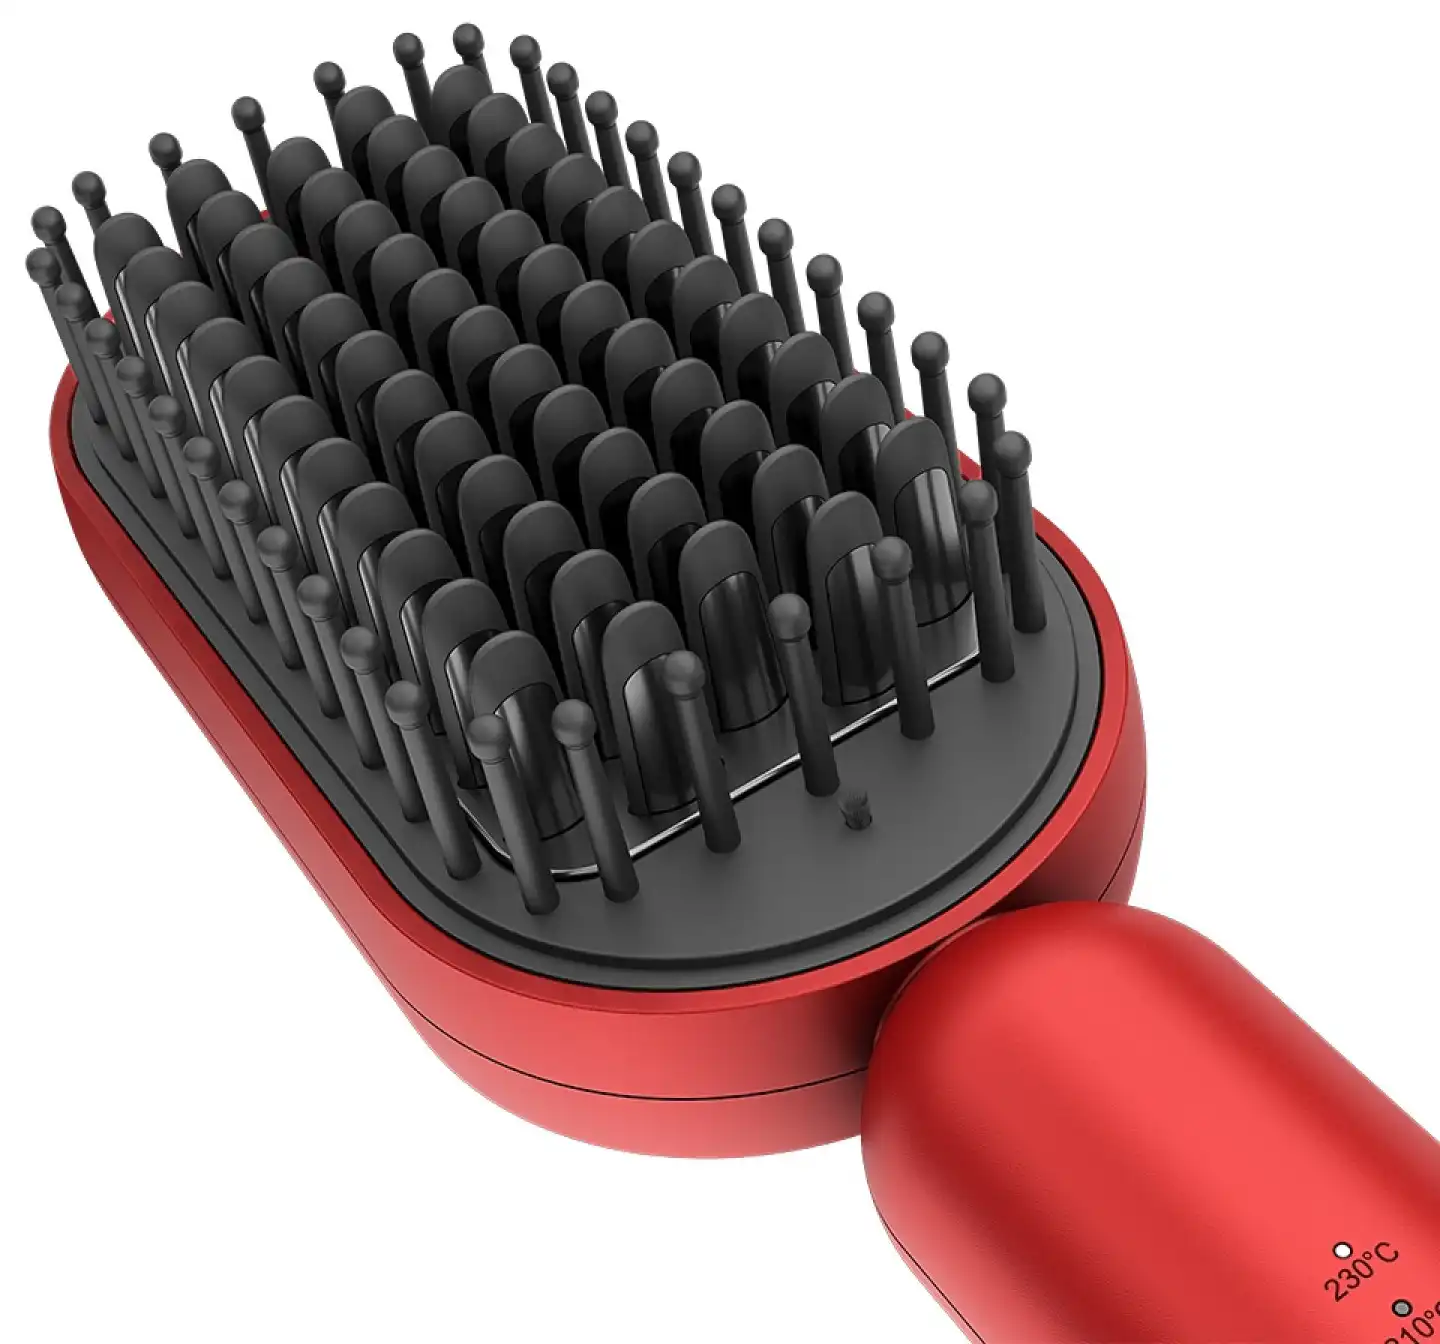 Rush Brush Electric Hair Straightening Brush, Red, S3 LITE